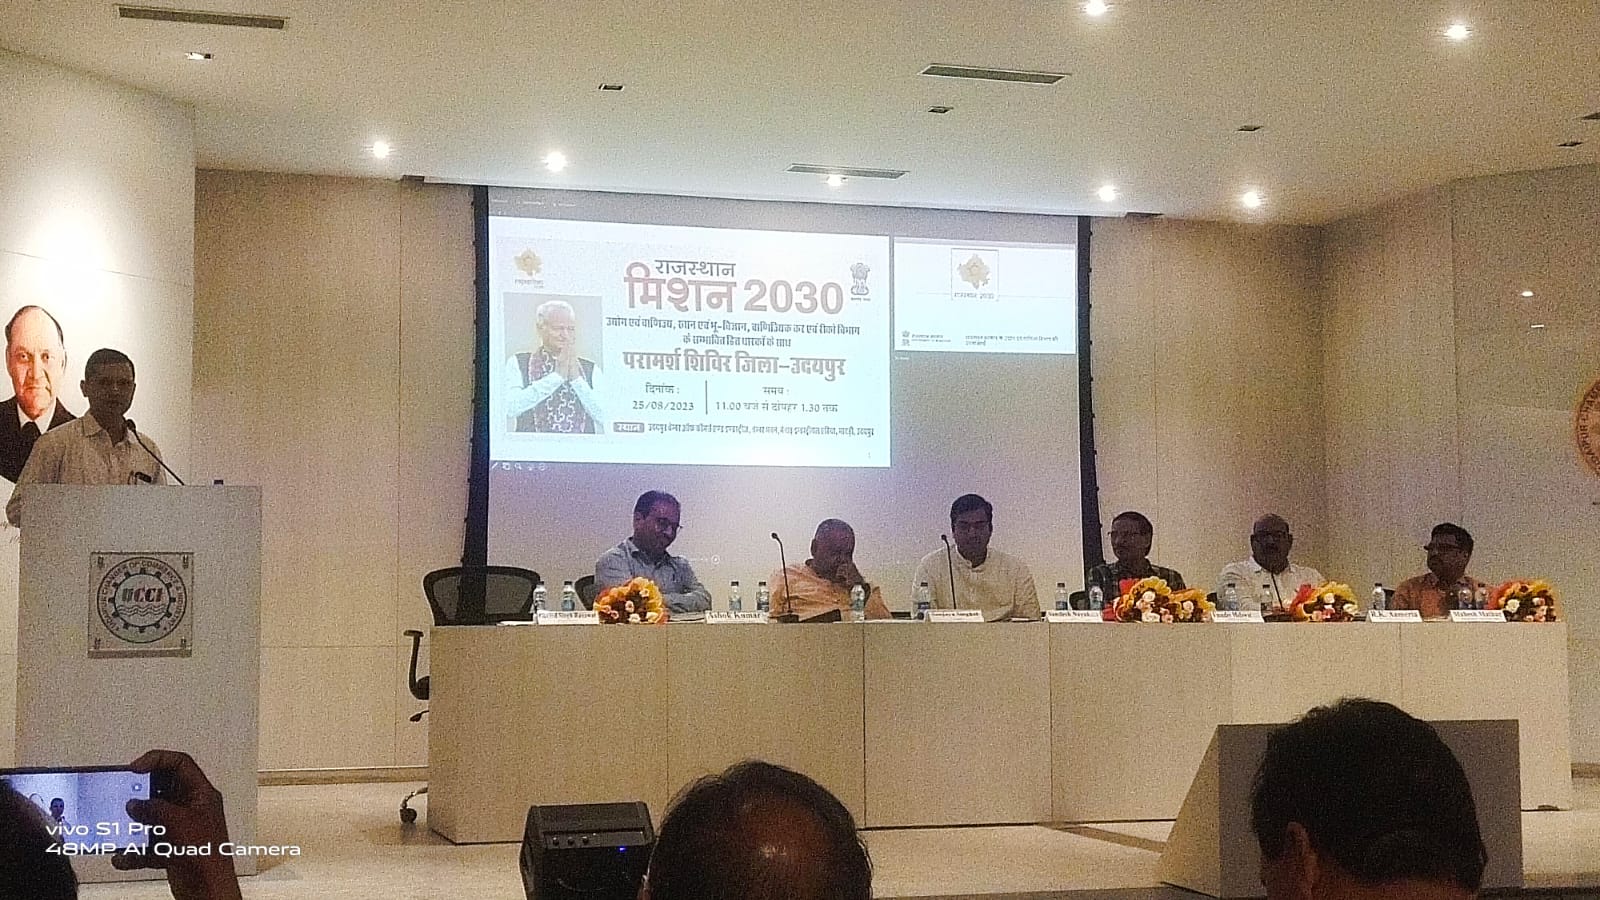 राजस्थान मिशन-2030 : विजन दस्तावेज के लिए सांझा किए सुझाव